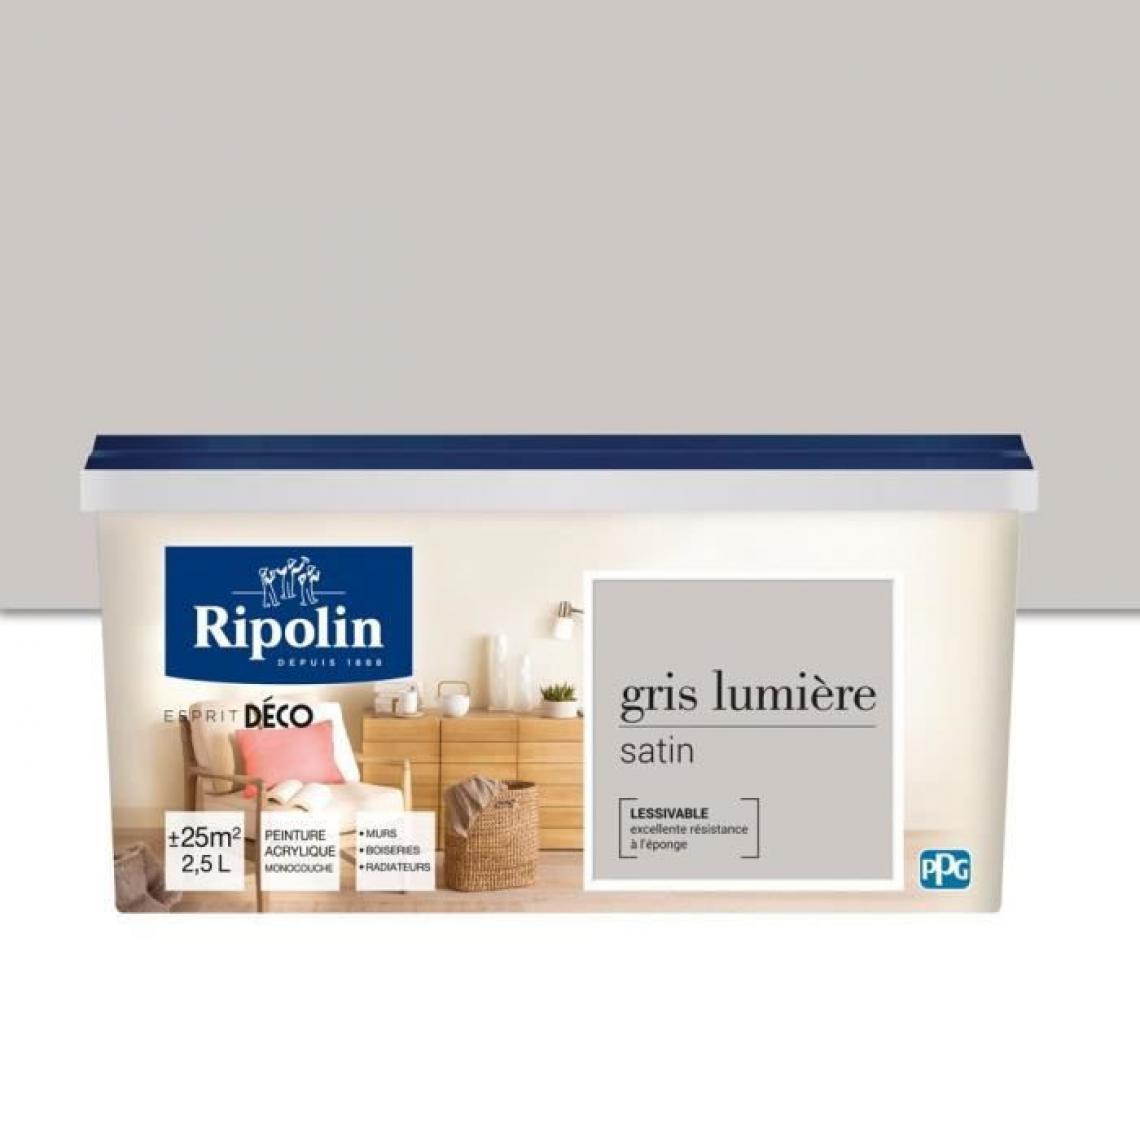 Ripolin - RIPOLIN Peinture Murale Toutes Pieces - Gris Lumiere Satin, 2,5L - Peinture & enduit rénovation